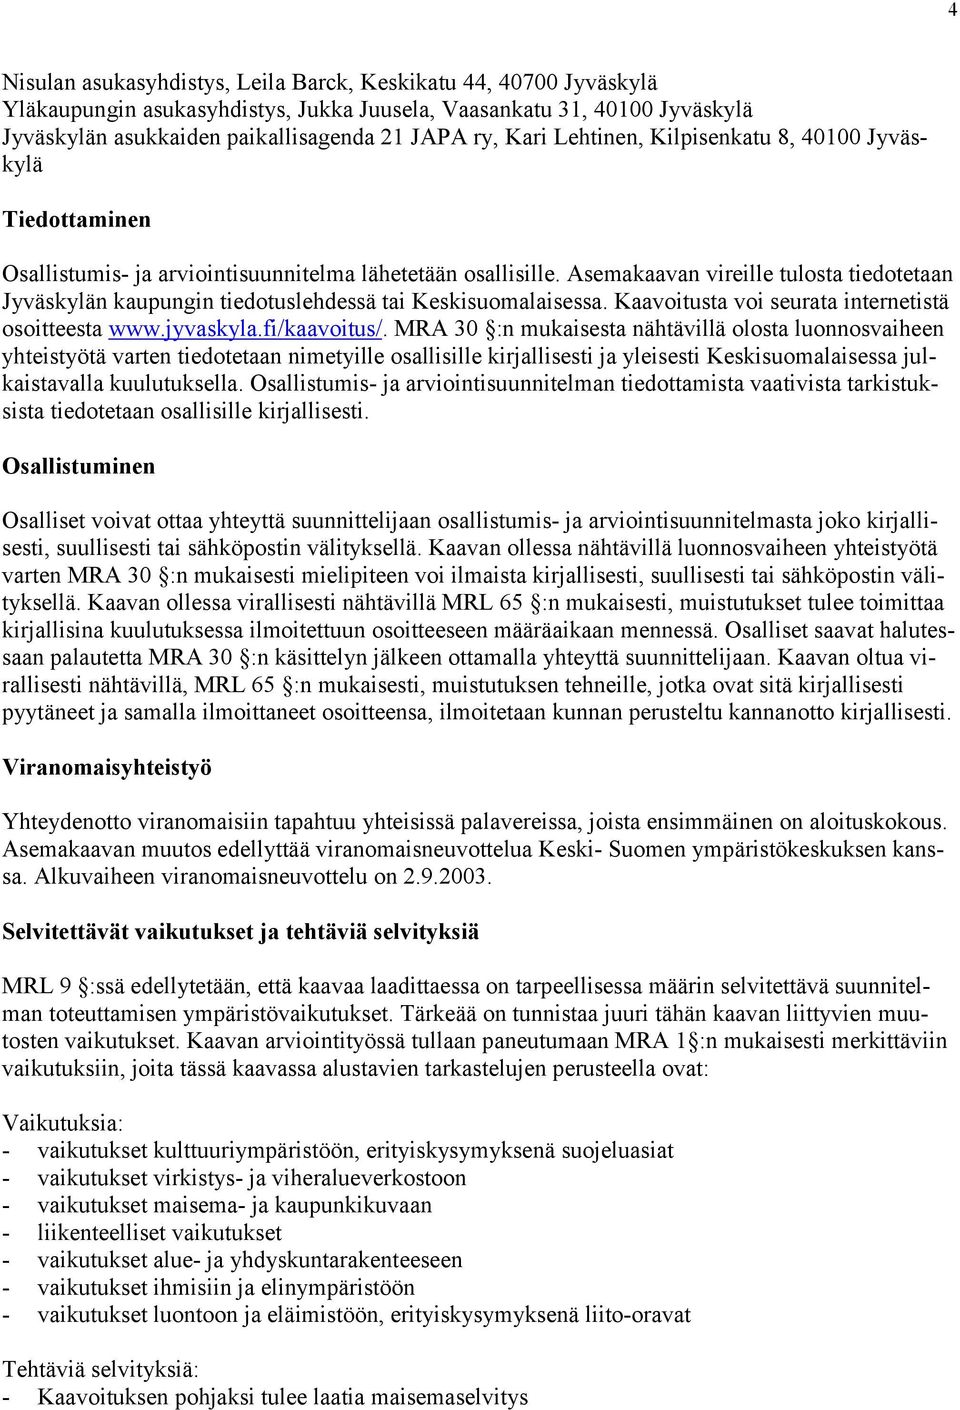 Asemakaavan vireille tulosta tiedotetaan Jyväskylän kaupungin tiedotuslehdessä tai Keskisuomalaisessa. Kaavoitusta voi seurata internetistä osoitteesta www.jyvaskyla.fi/kaavoitus/.